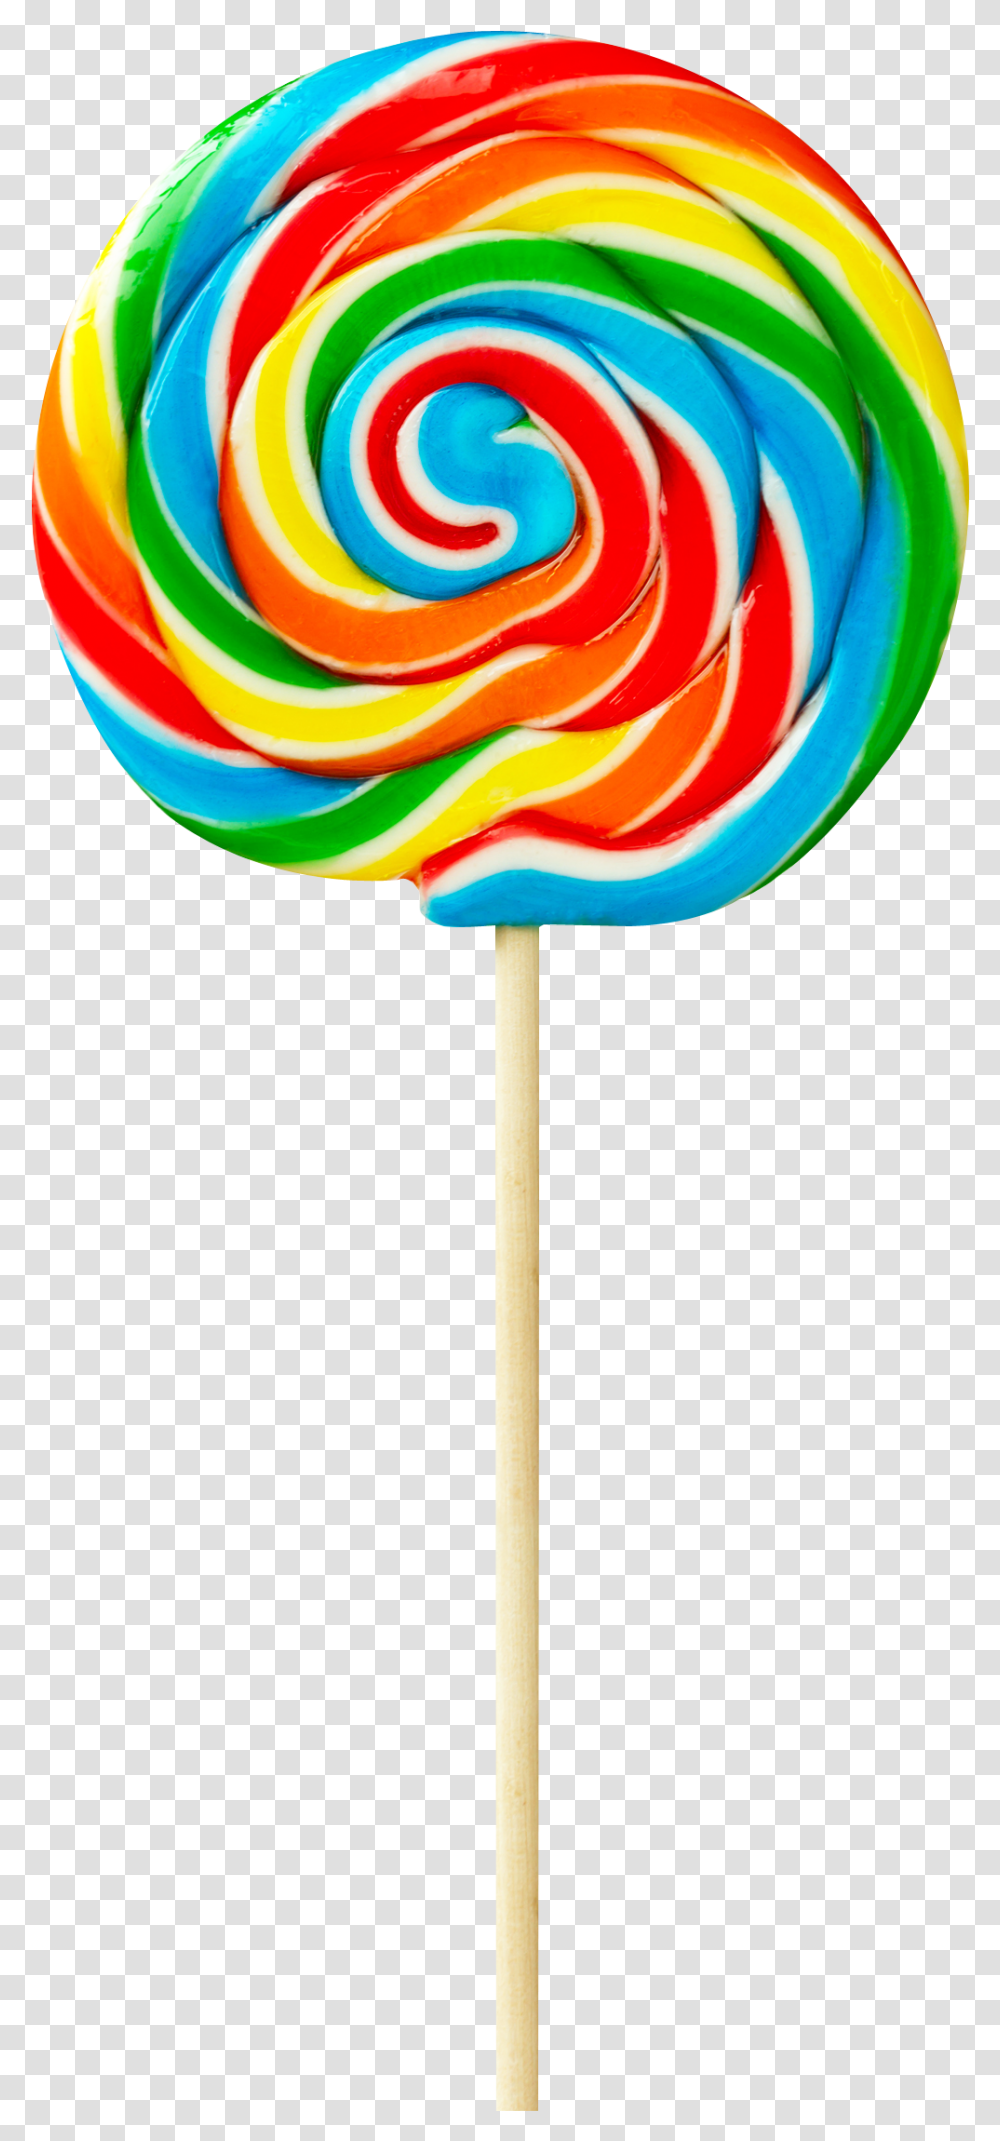 Lollipop Candy Image Background Lollipop Clipart, Food, Lamp Transparent Png